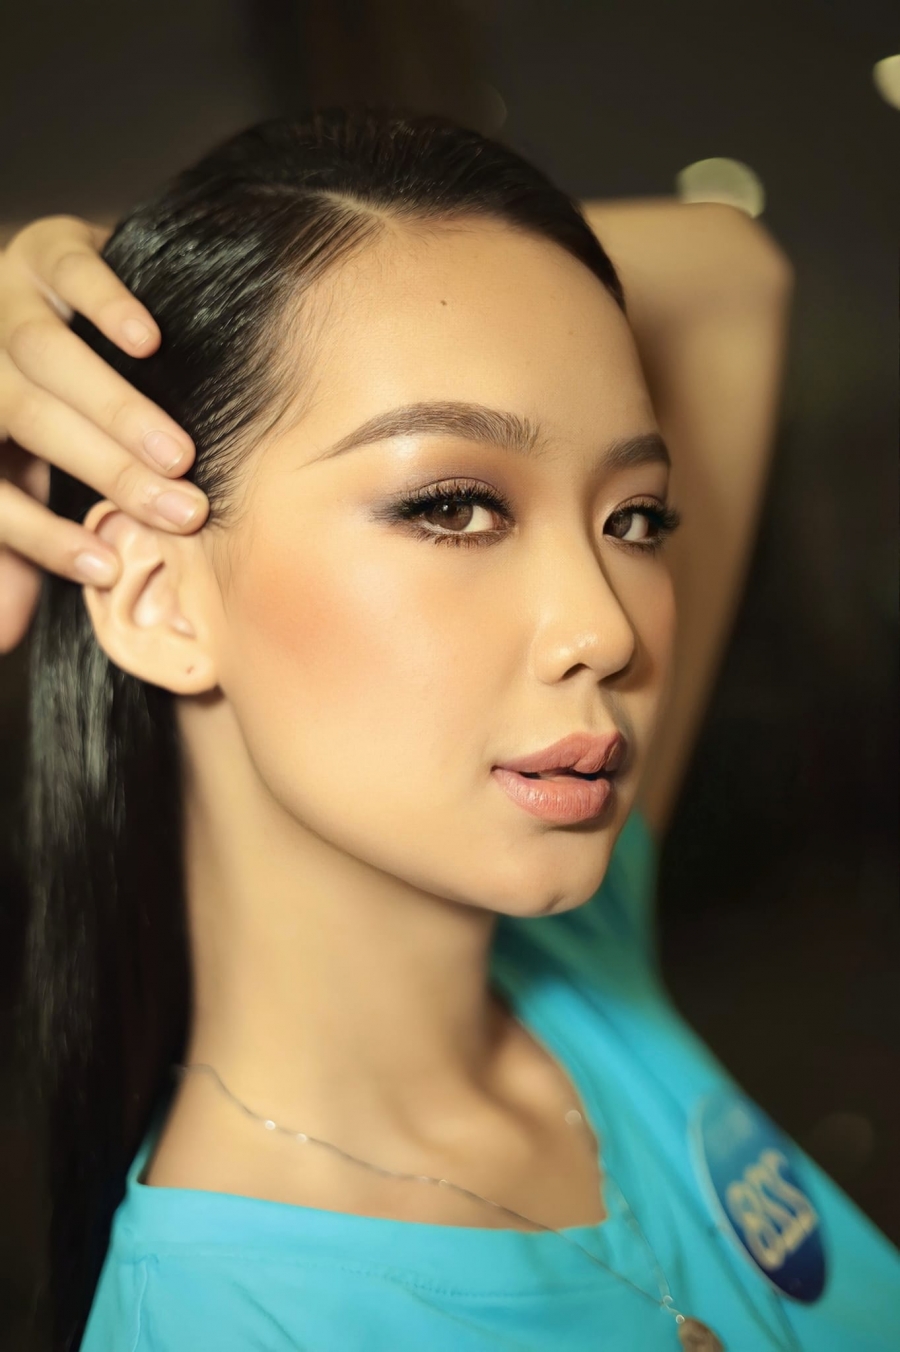 Năm 2020, người đẹp đăng kí tham gia cuộc thi Hoa hậu Việt Nam 2020 nhưng chỉ đạt thành tích top 22.